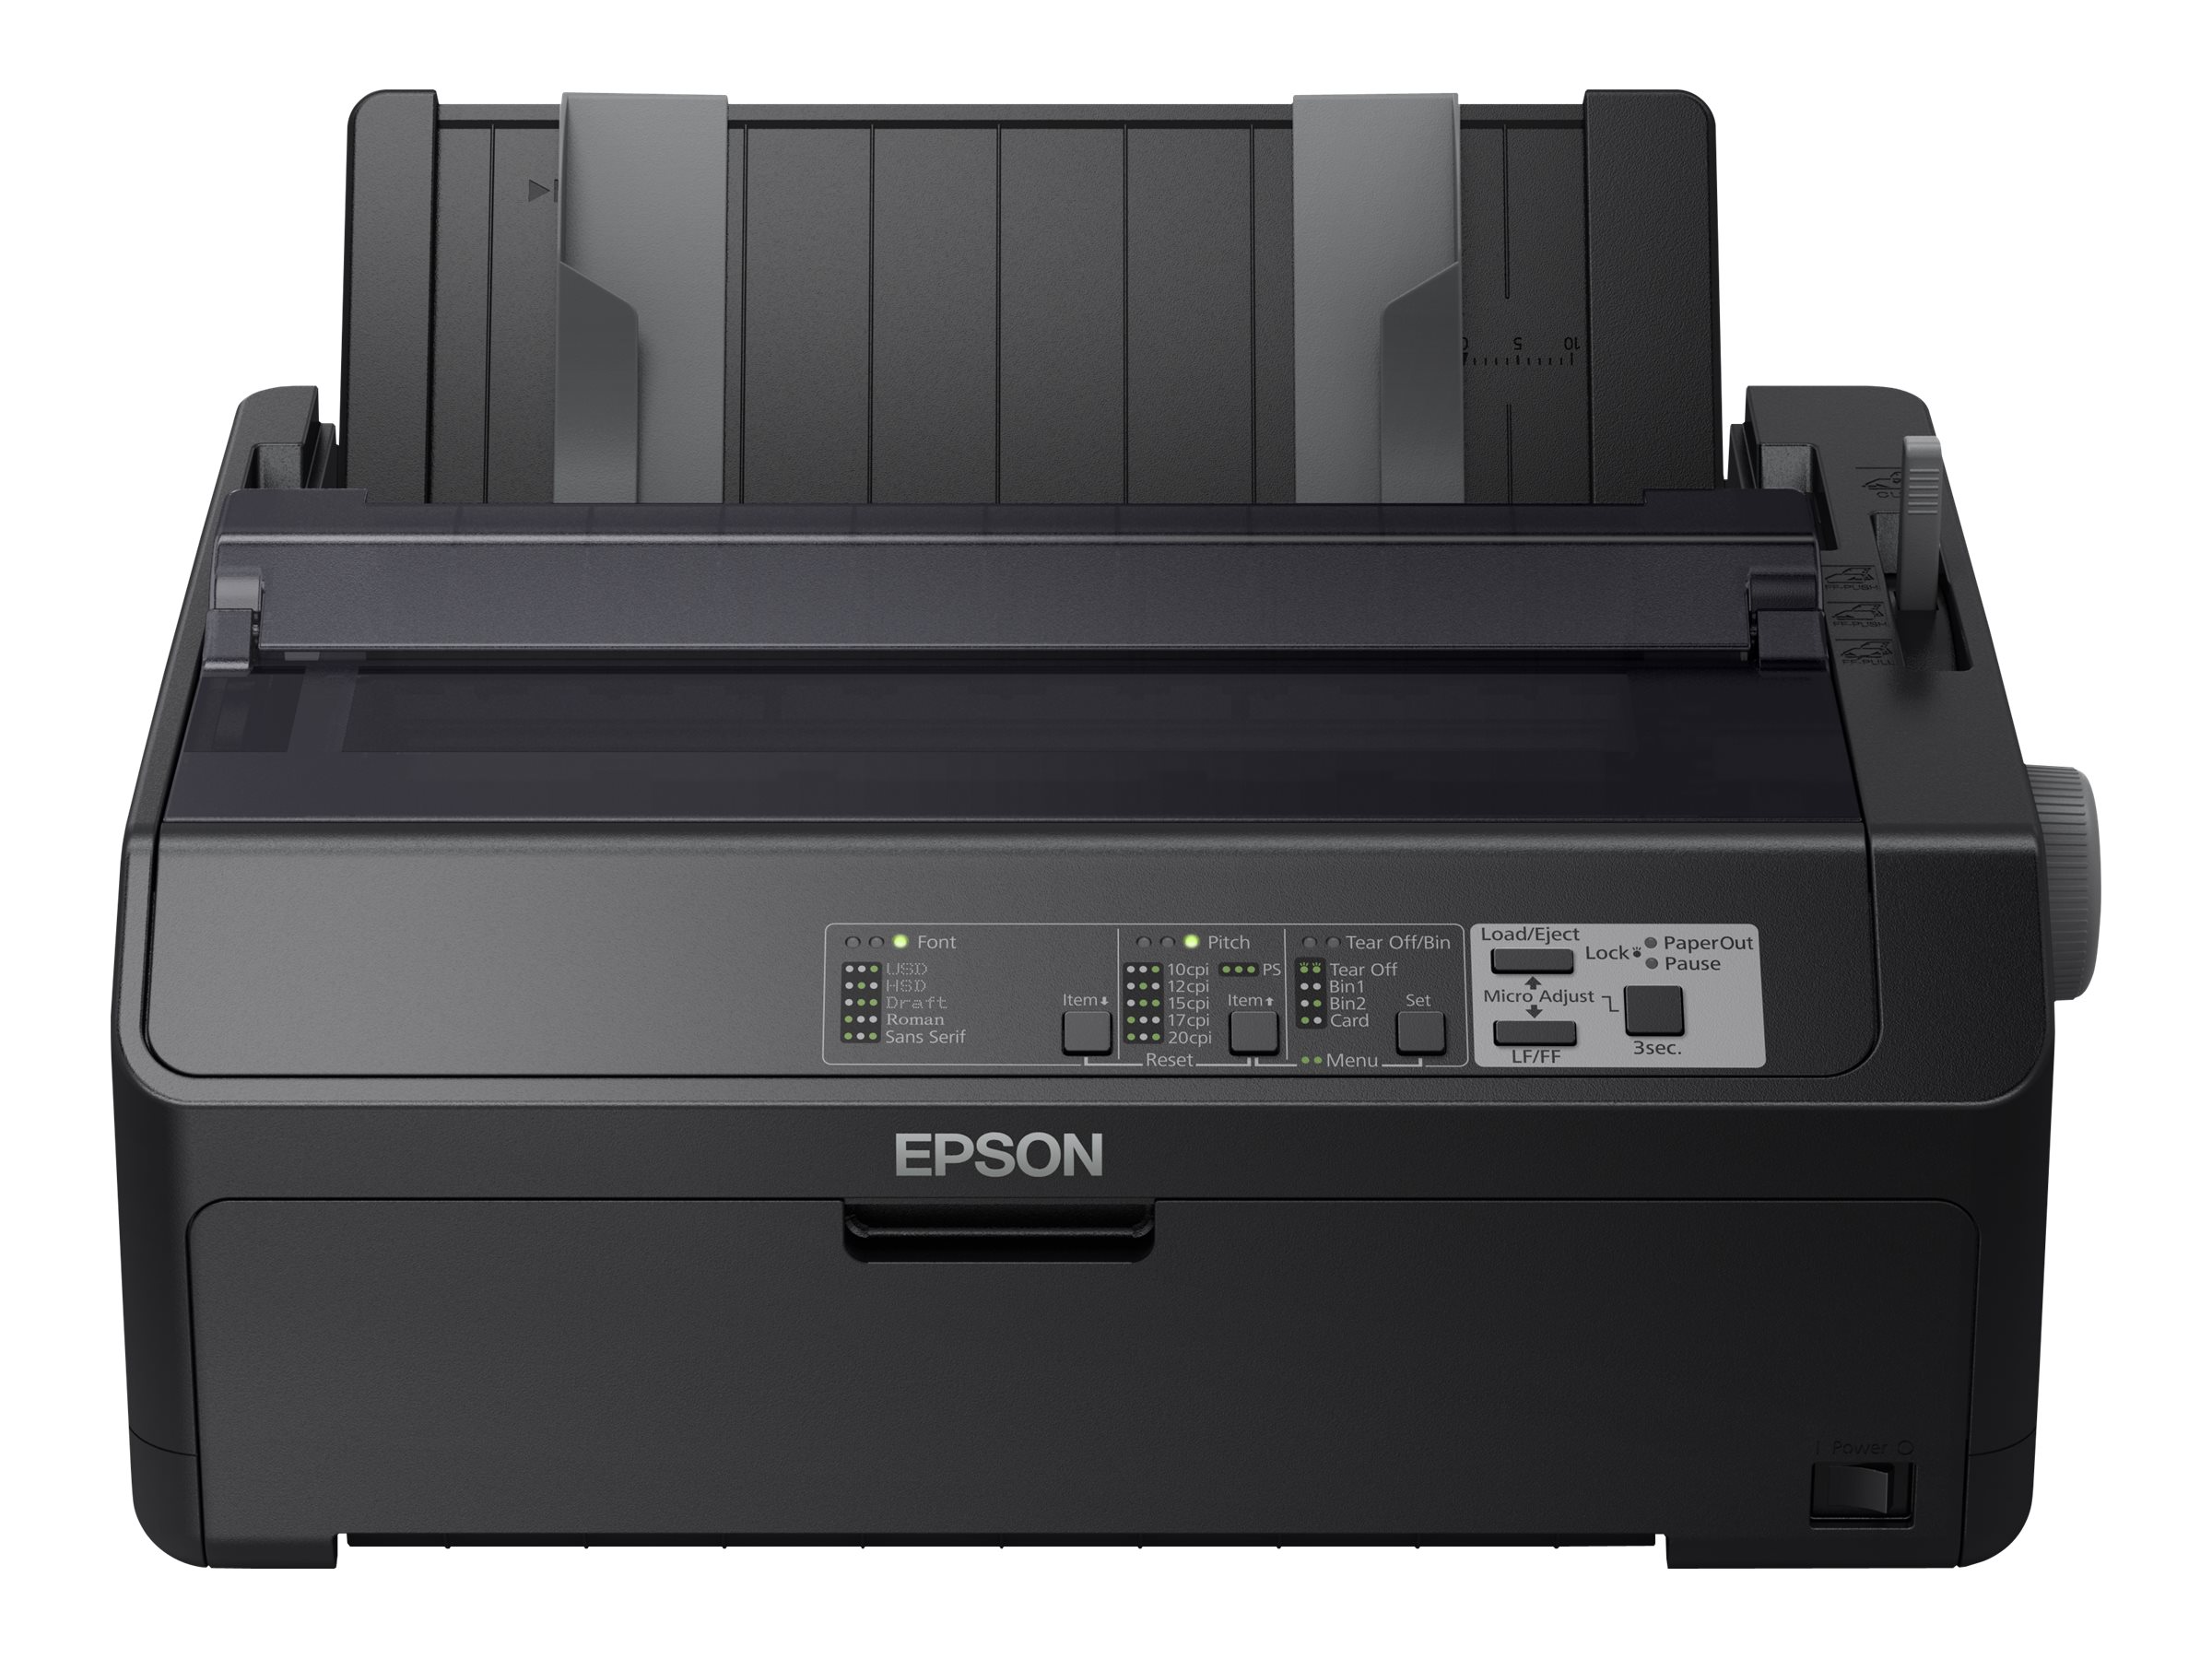 Epson FX 890II - Imprimante - Noir et blanc - matricielle - Rouleau (21,6 cm), JIS B4, 254 mm (largeur) - 240 x 144 dpi - 9 pin - jusqu'à 738 car/sec - parallèle, USB 2.0 - C11CF37401 - Imprimantes matricielles